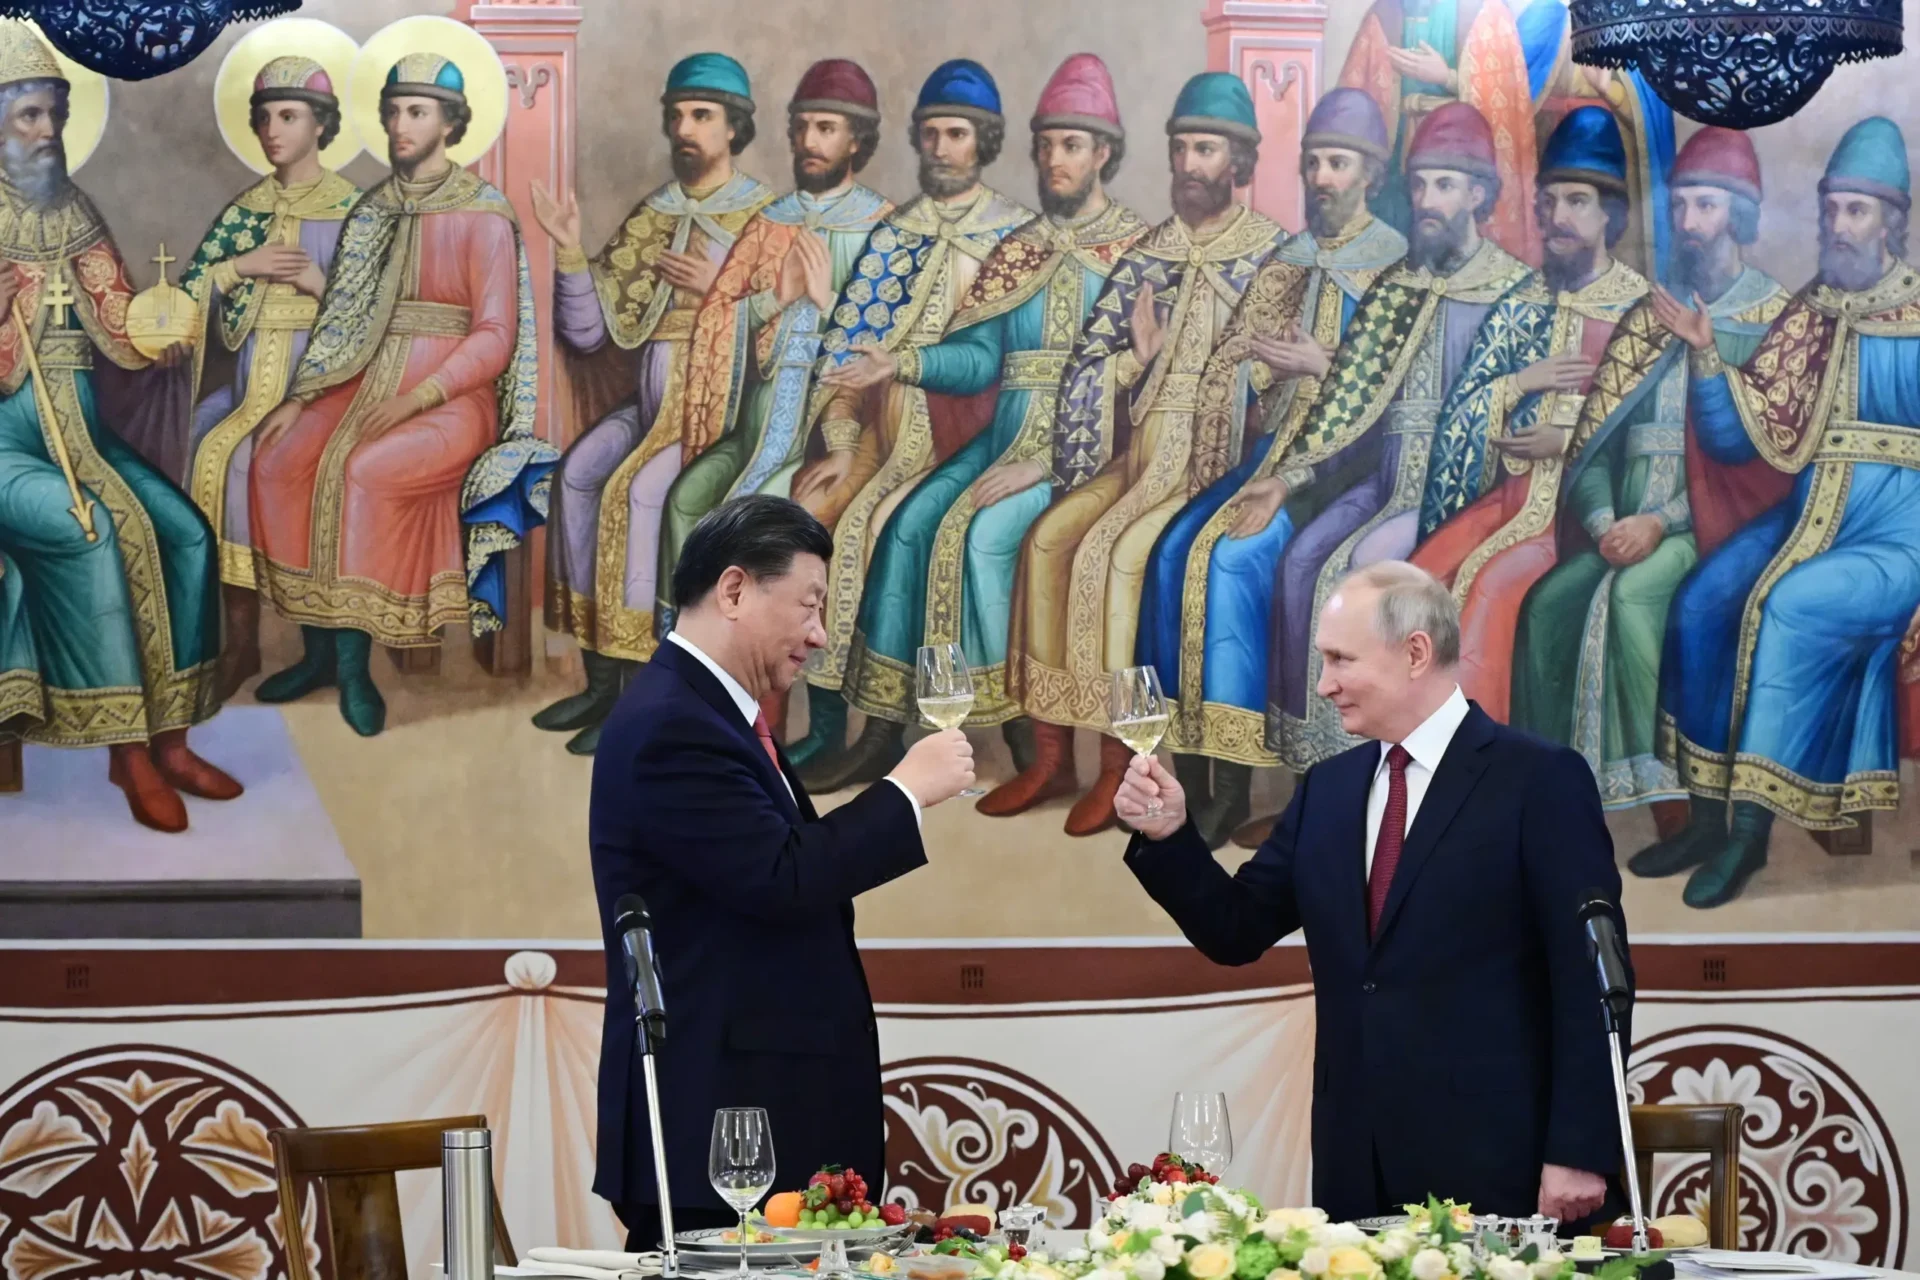 Putin recibe a Xi en el Kremlin con pompa del palacio imperial